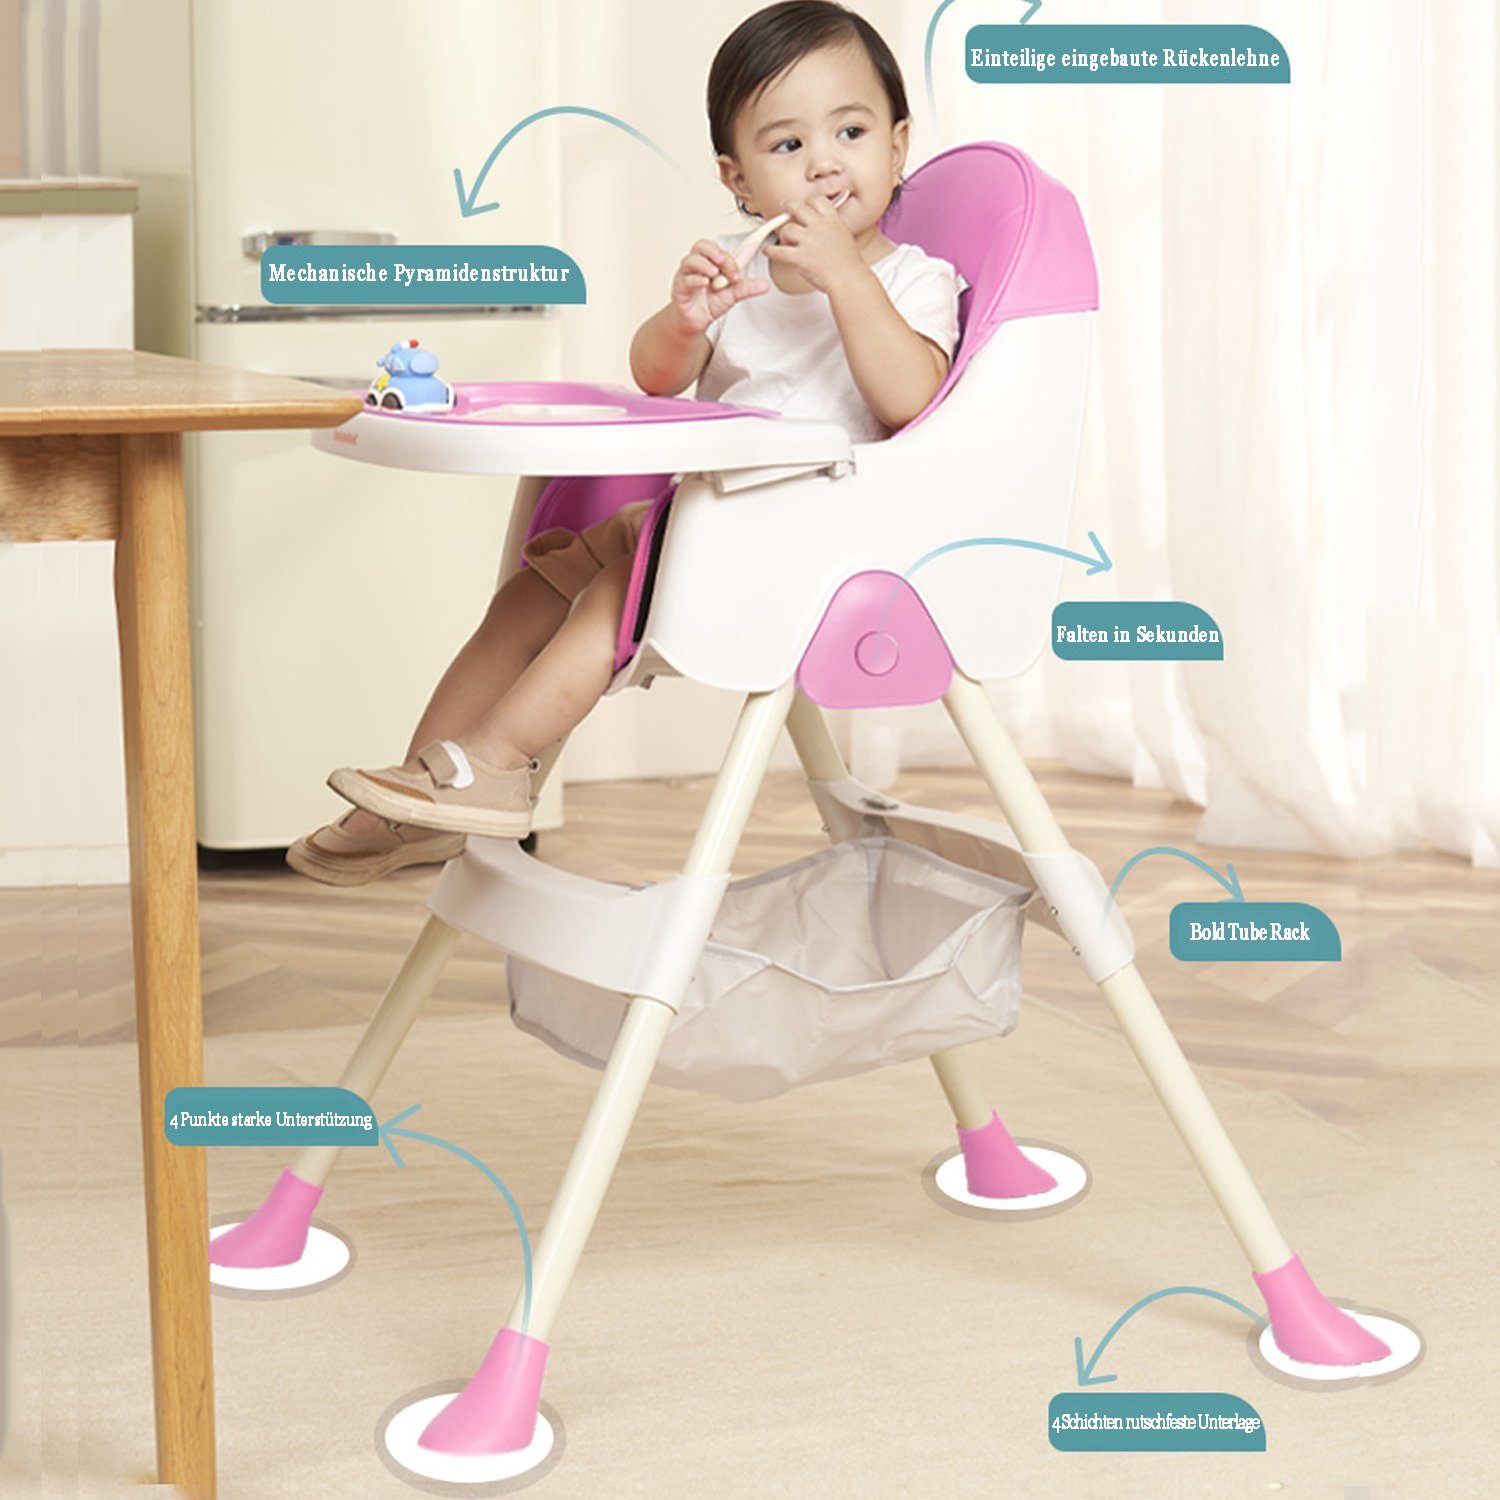 Seven Comfort Kinderklappstuhl Kinderhochstuhl (mit wasserdichtes Ablagekorb, Tablett) lila 5-Punkt-Sicherheitsgurt, abnehmbares mit